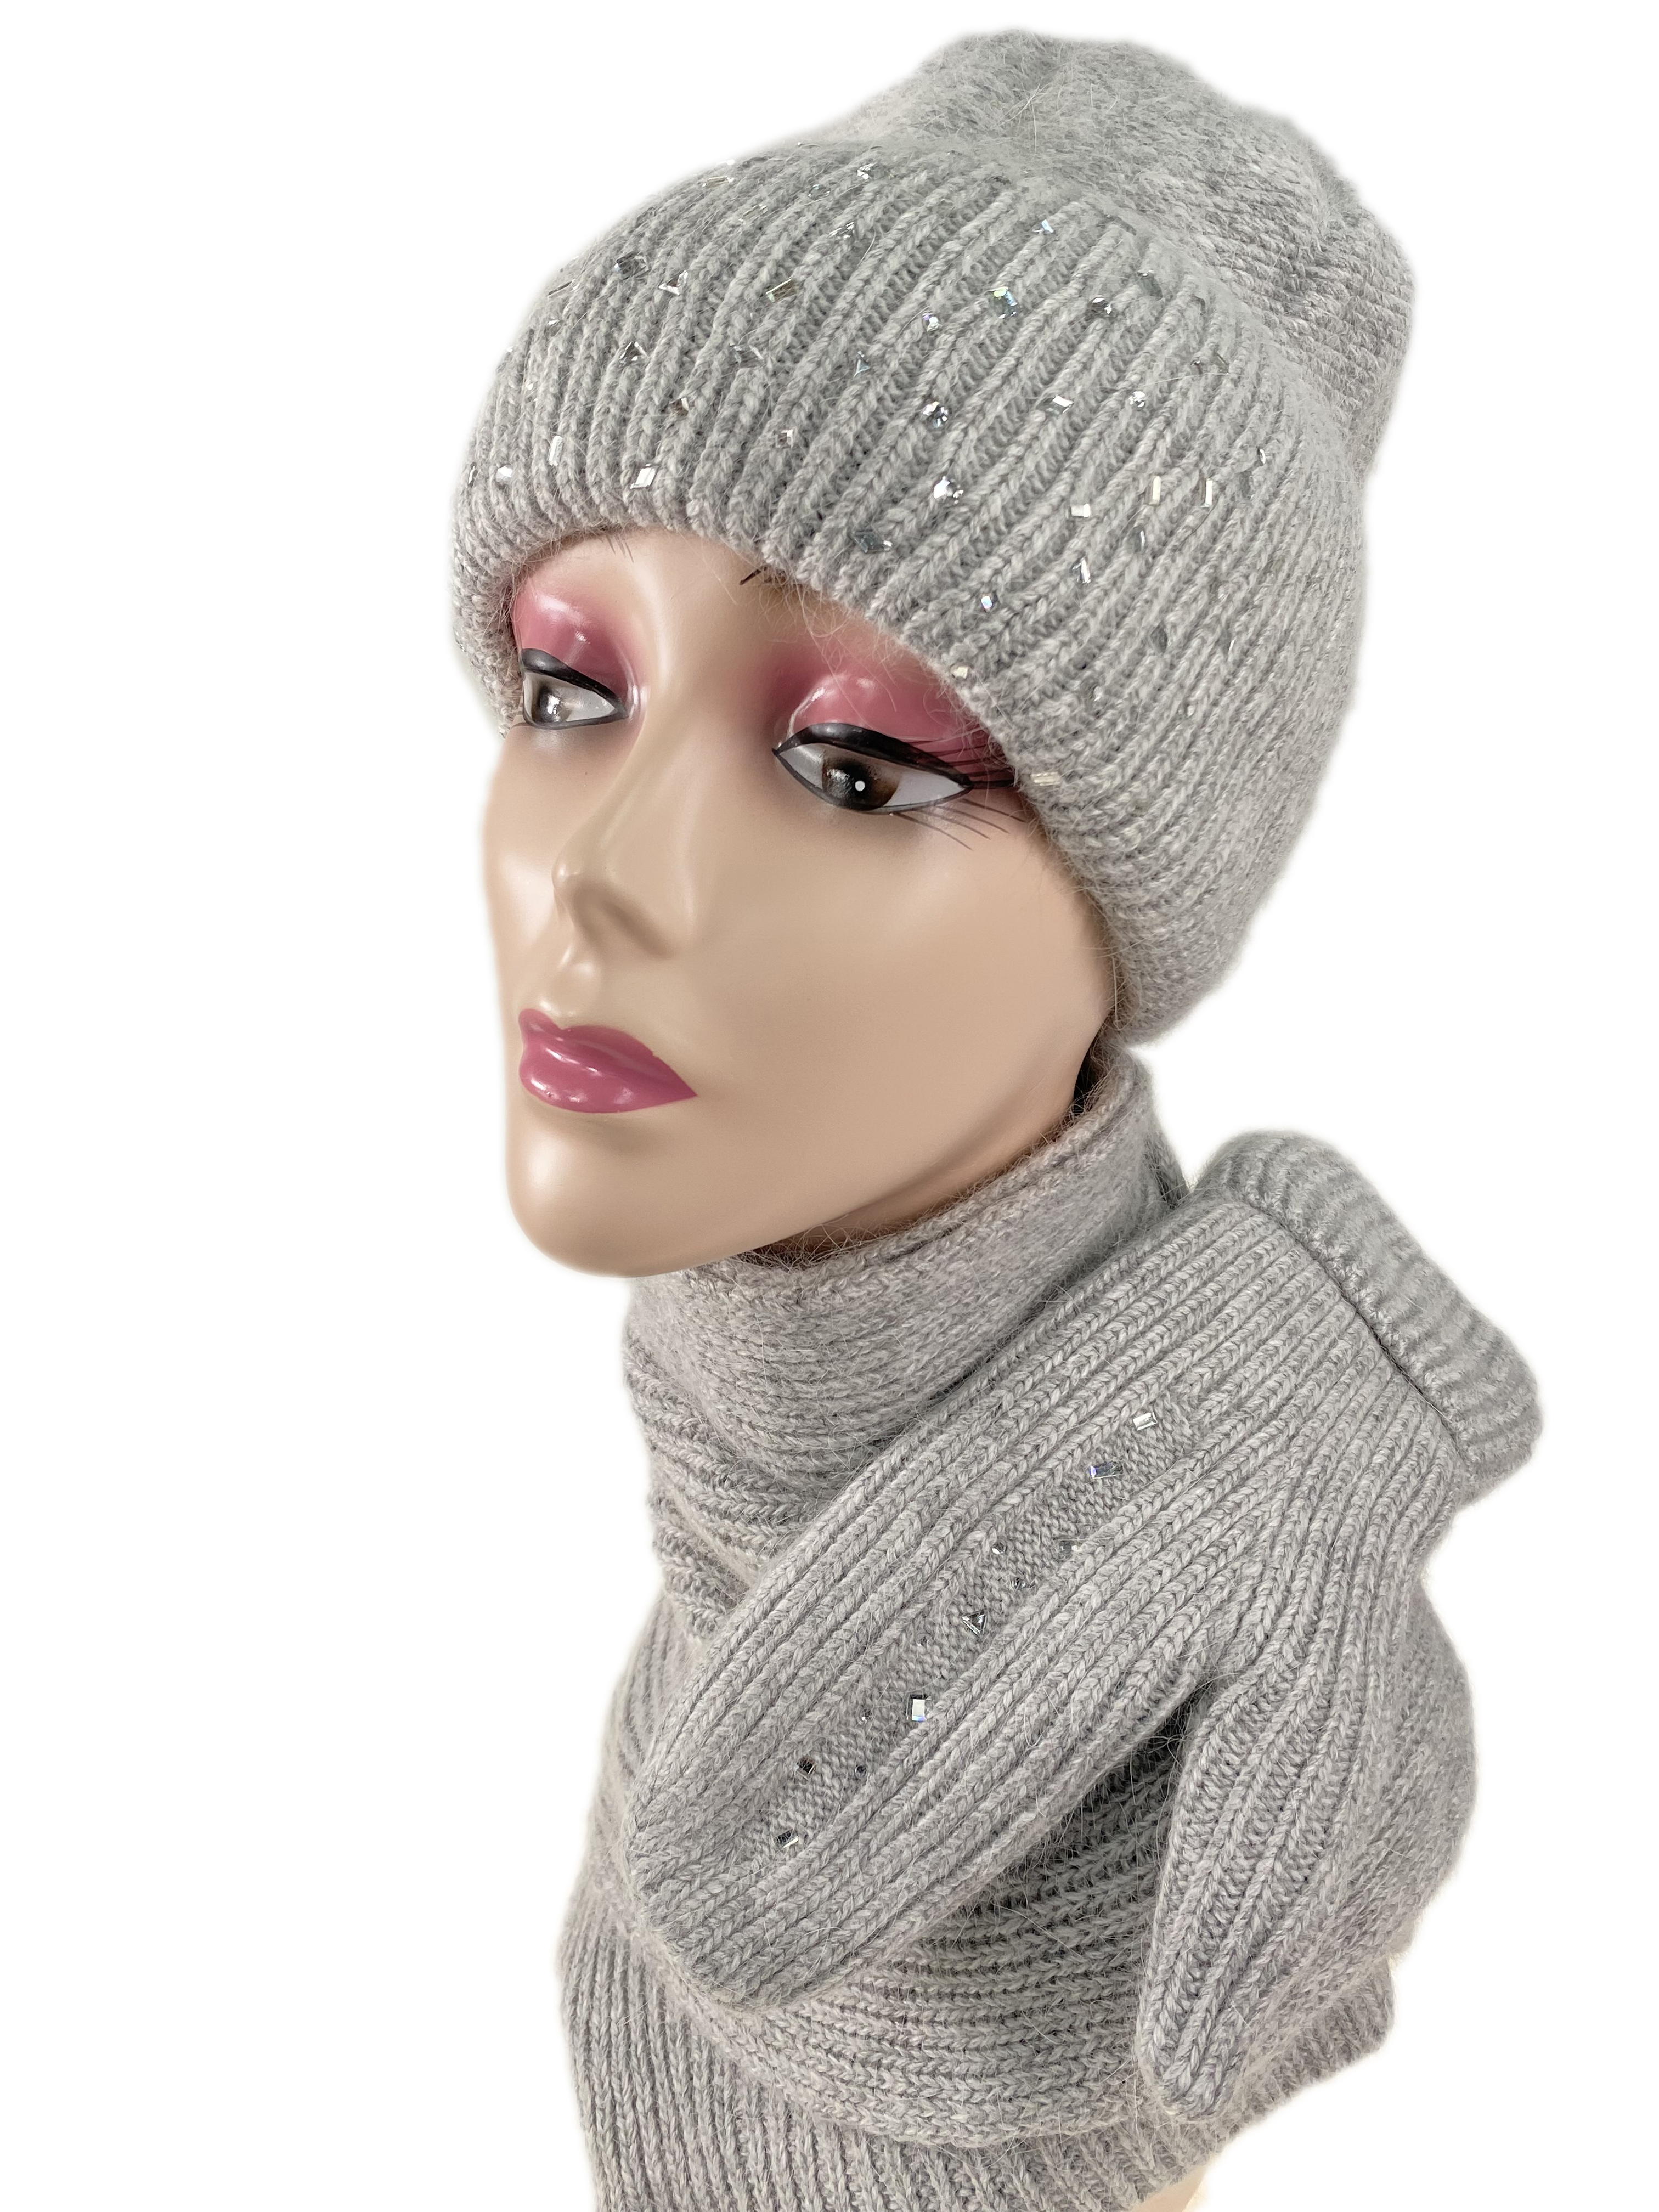 Комплект шапка женская, шарф и варежки, цвет светло серый